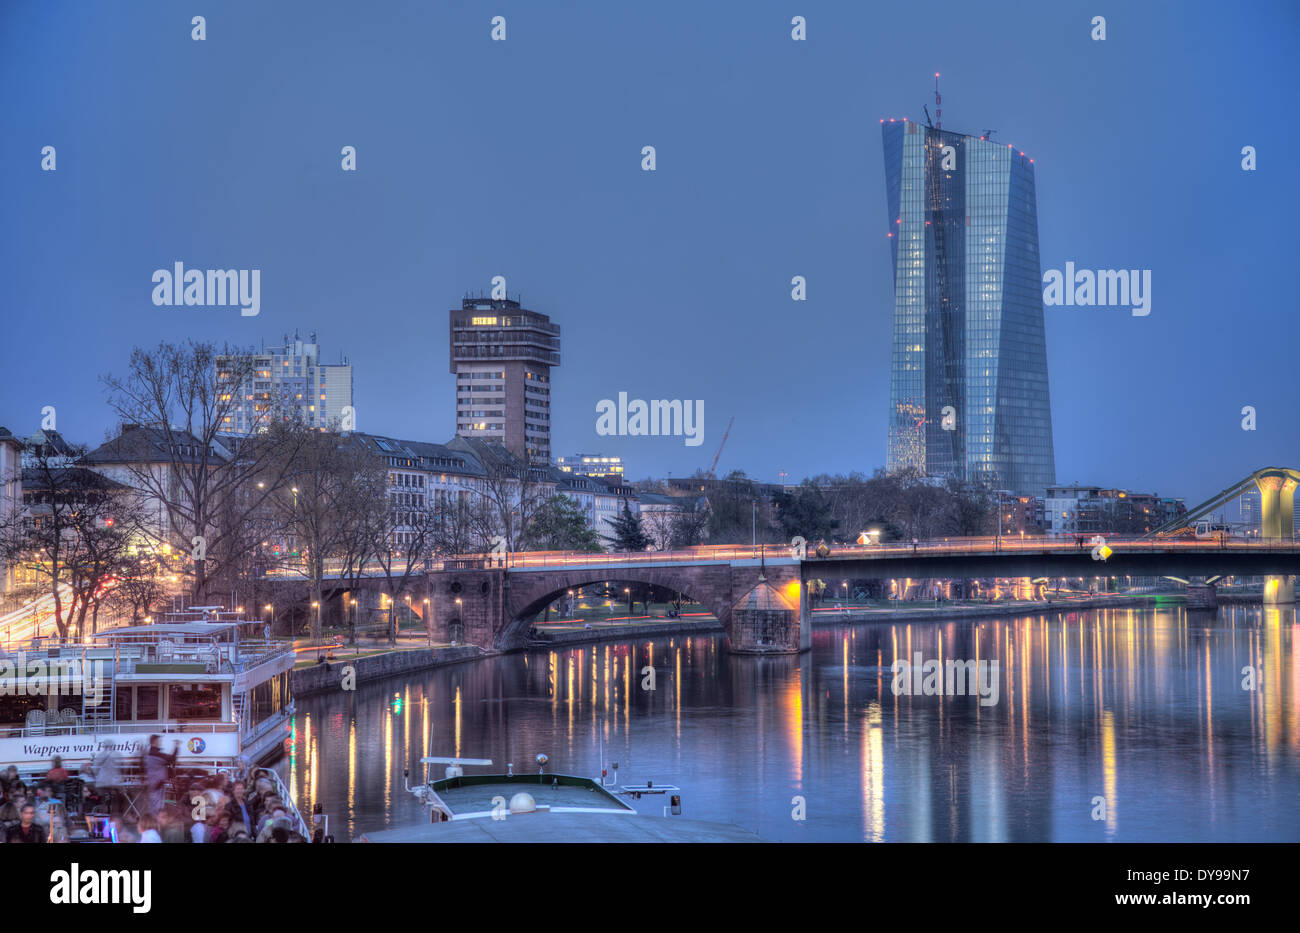 Am Main in Frankfurt am Main mit der EZB (Europäische Zentralbank) rechts von der Mitte. Stockfoto